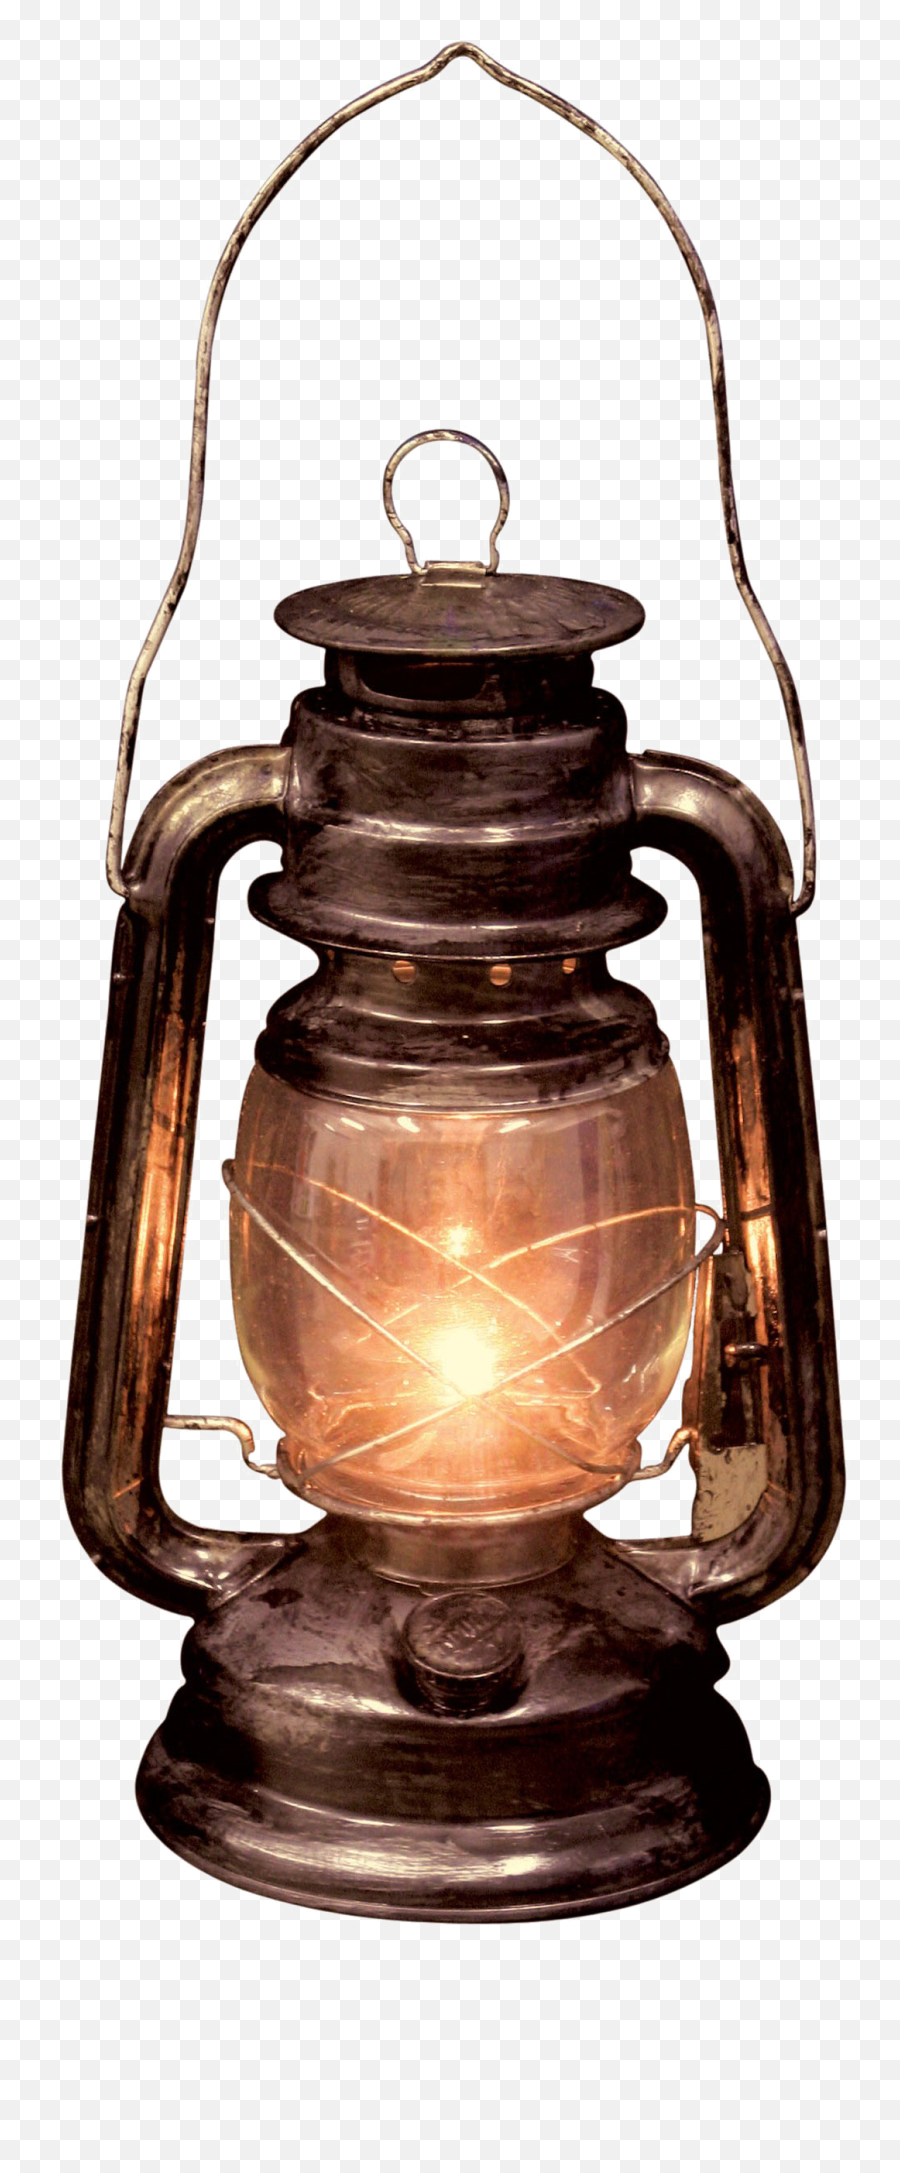 Decorative Lantern Transparent Png - Old Lantern,Lantern Png